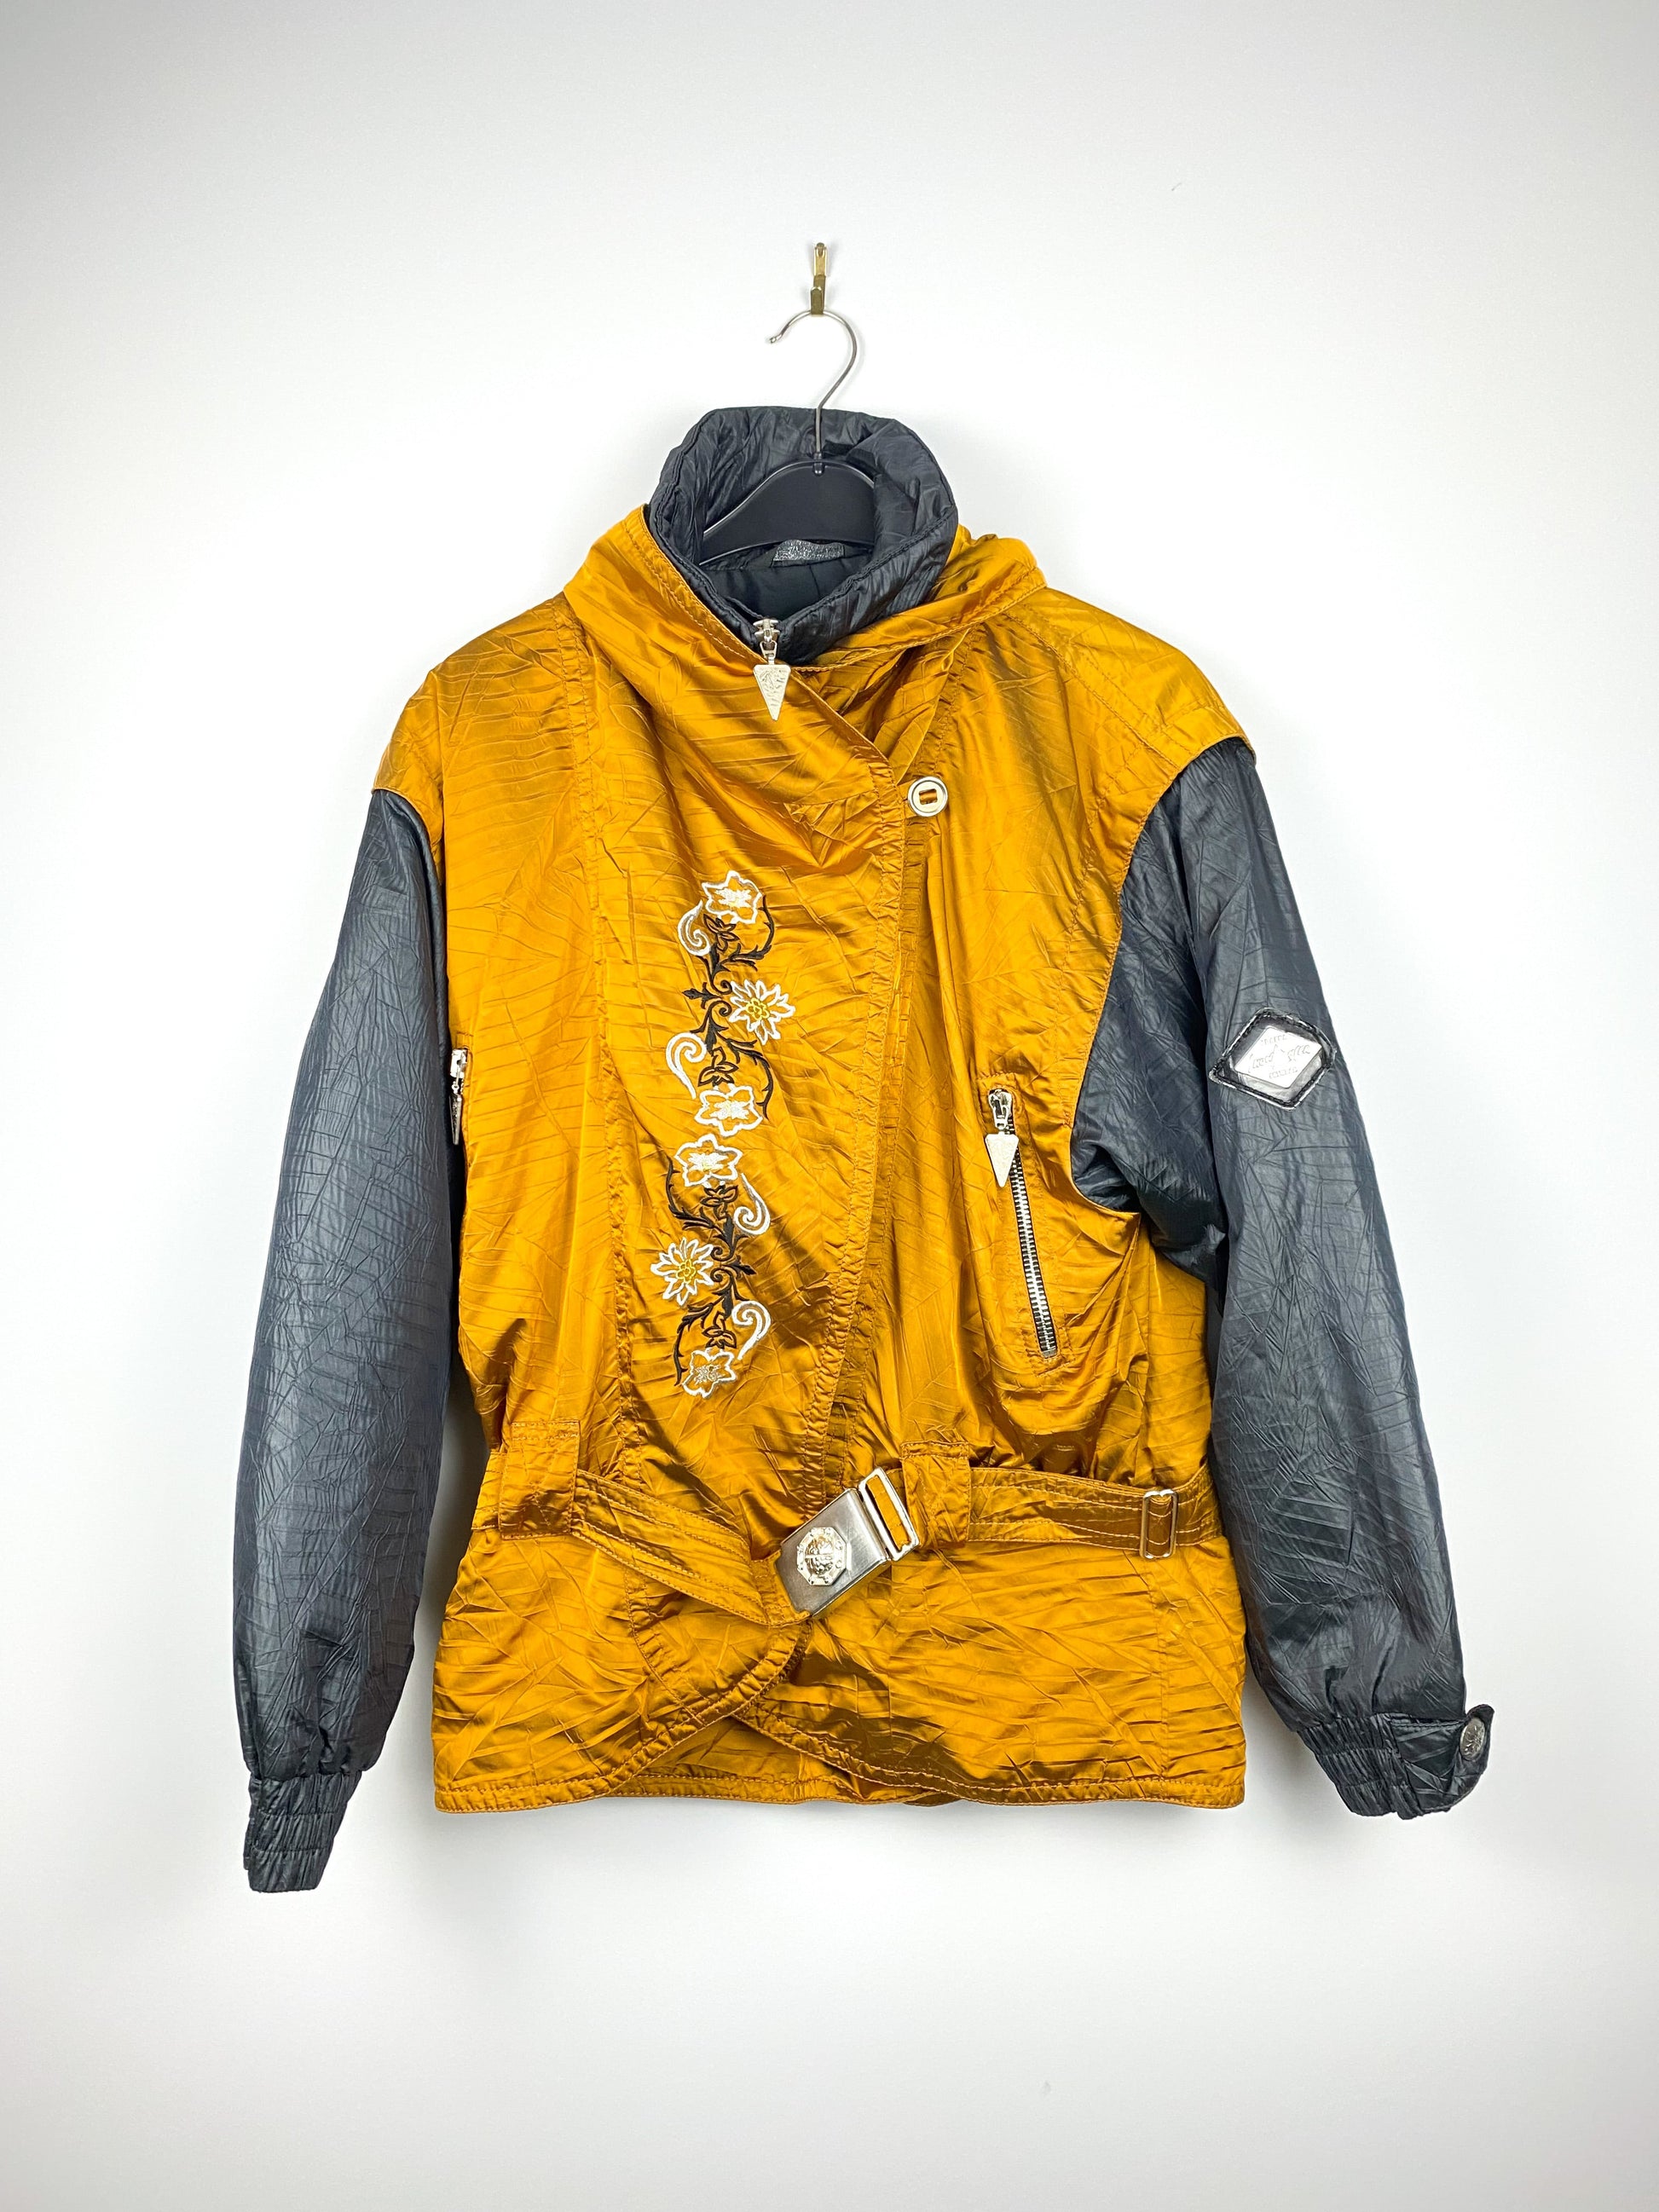 zipped up vintage snow dancer jacket